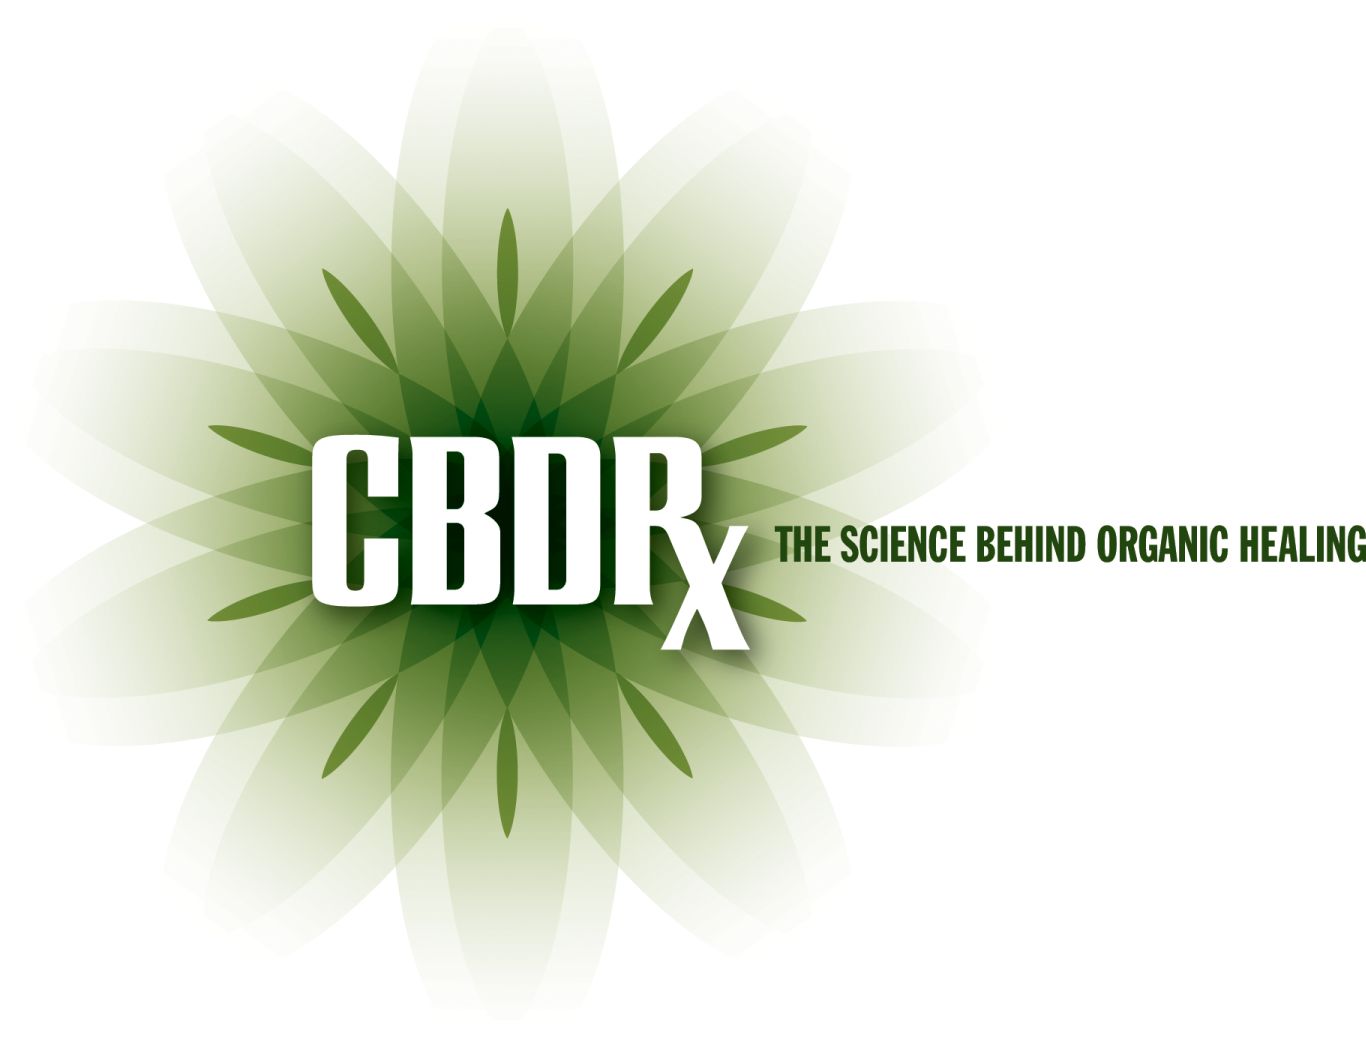 CBDRx Receives USDA 